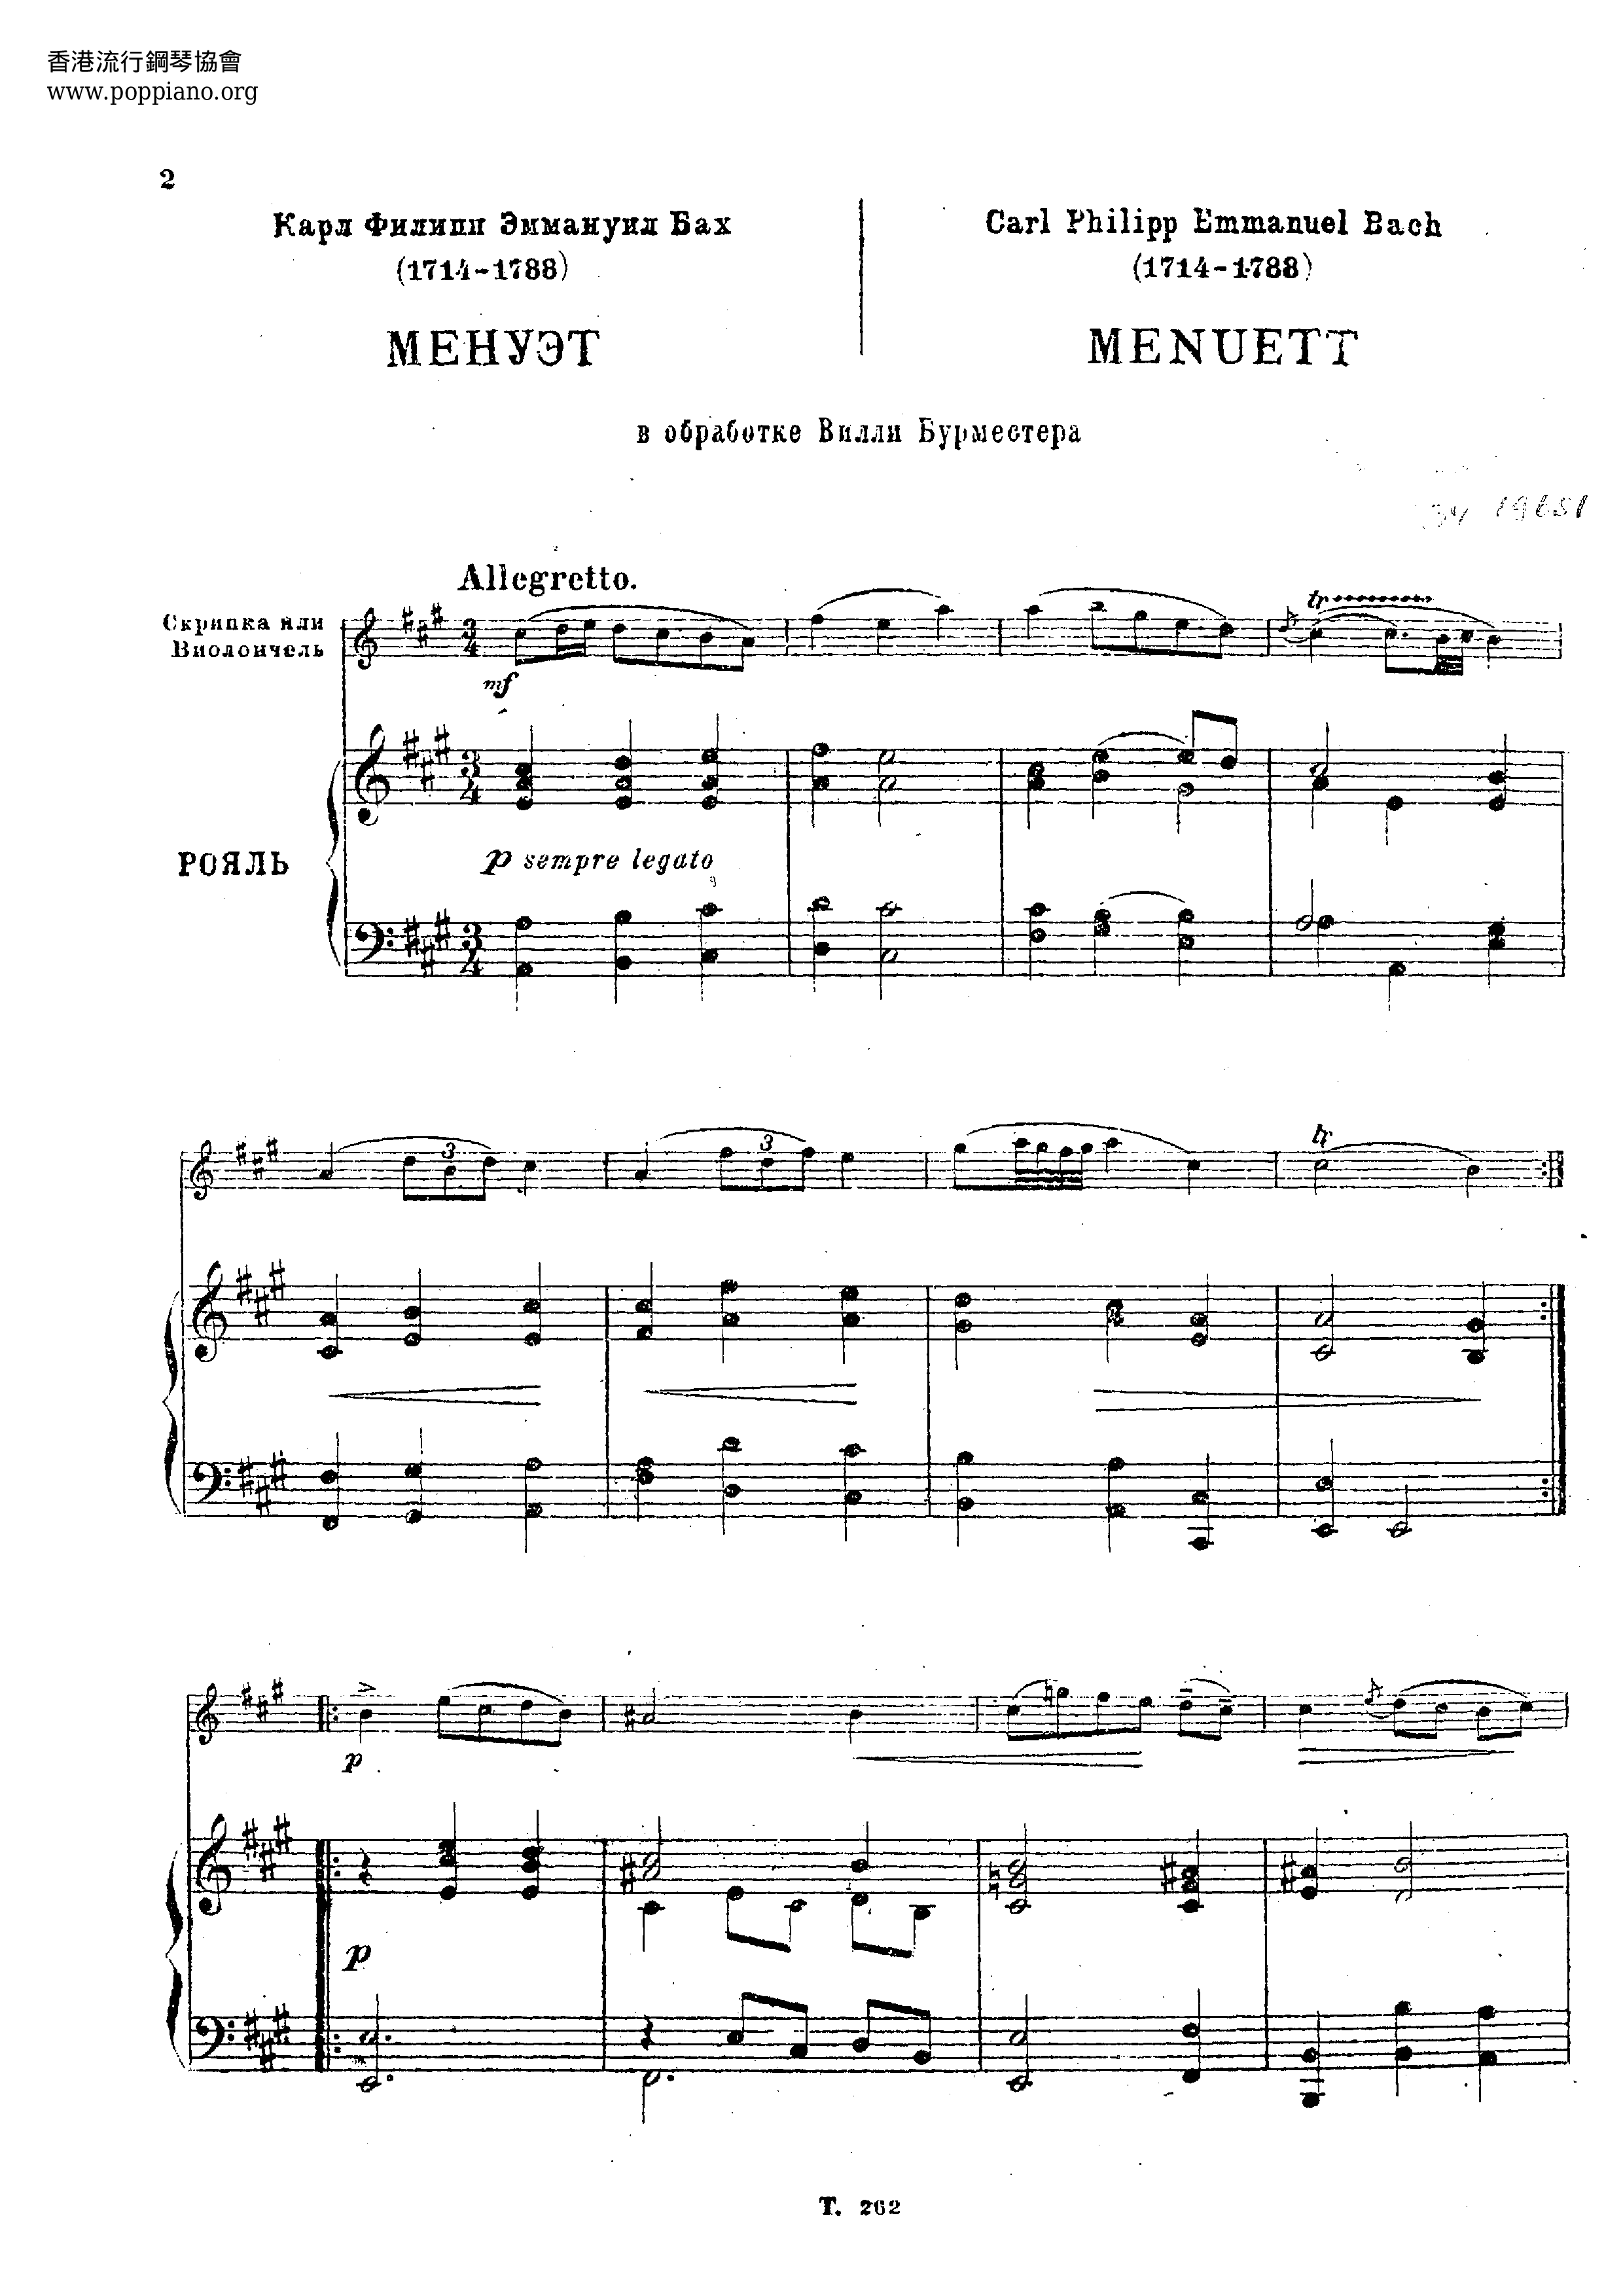 Minuet in A major, H.169 Score